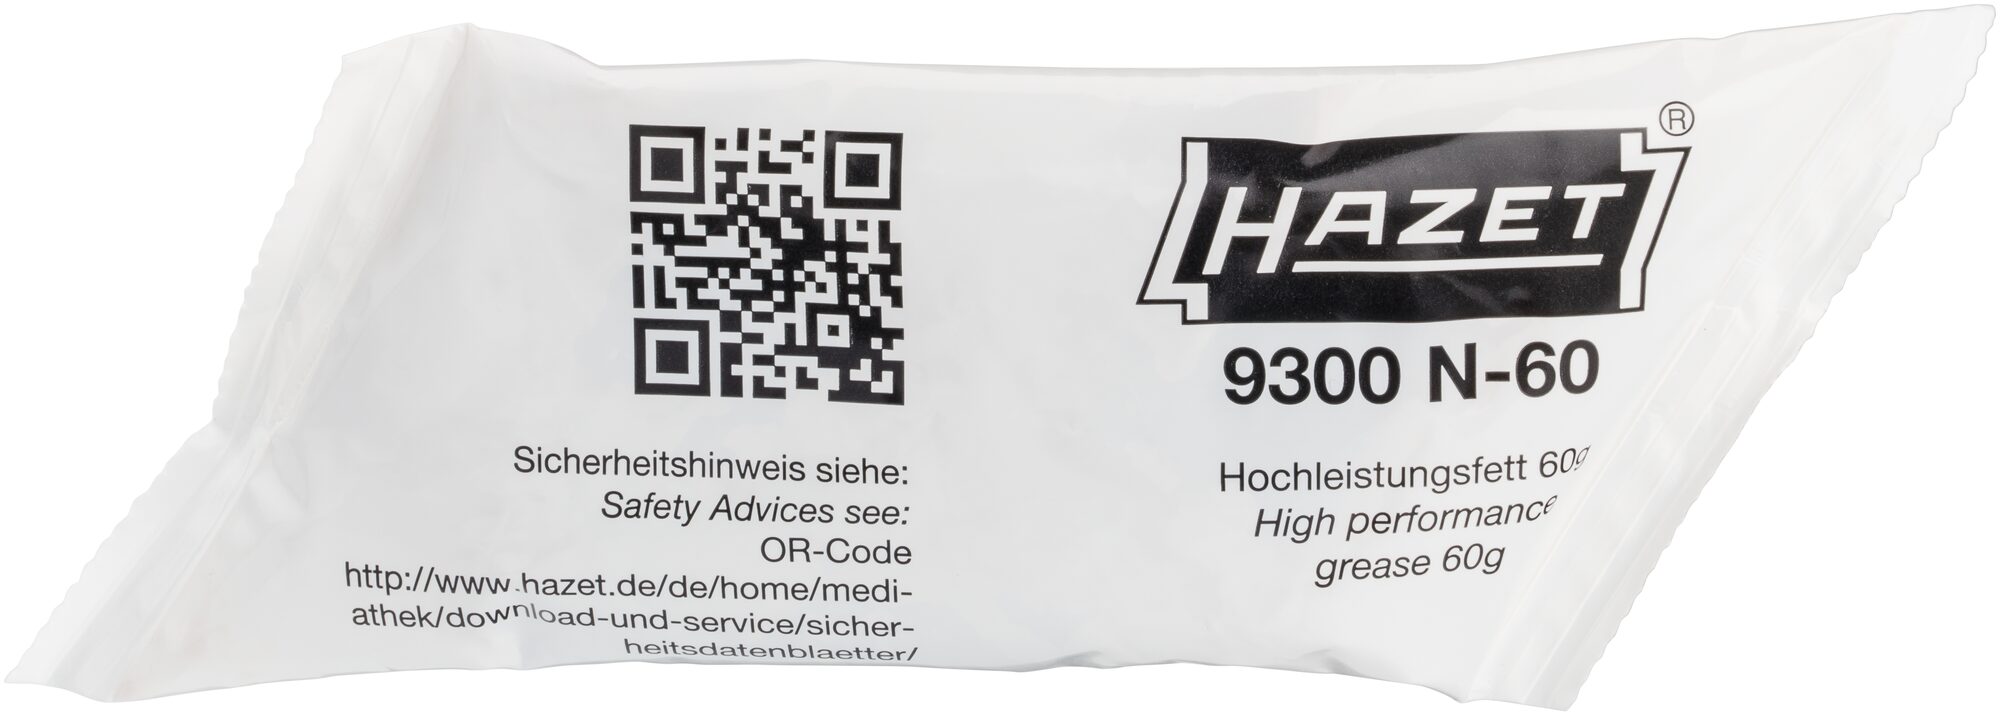 HAZET Hochleistungs-Fett 9300N-60